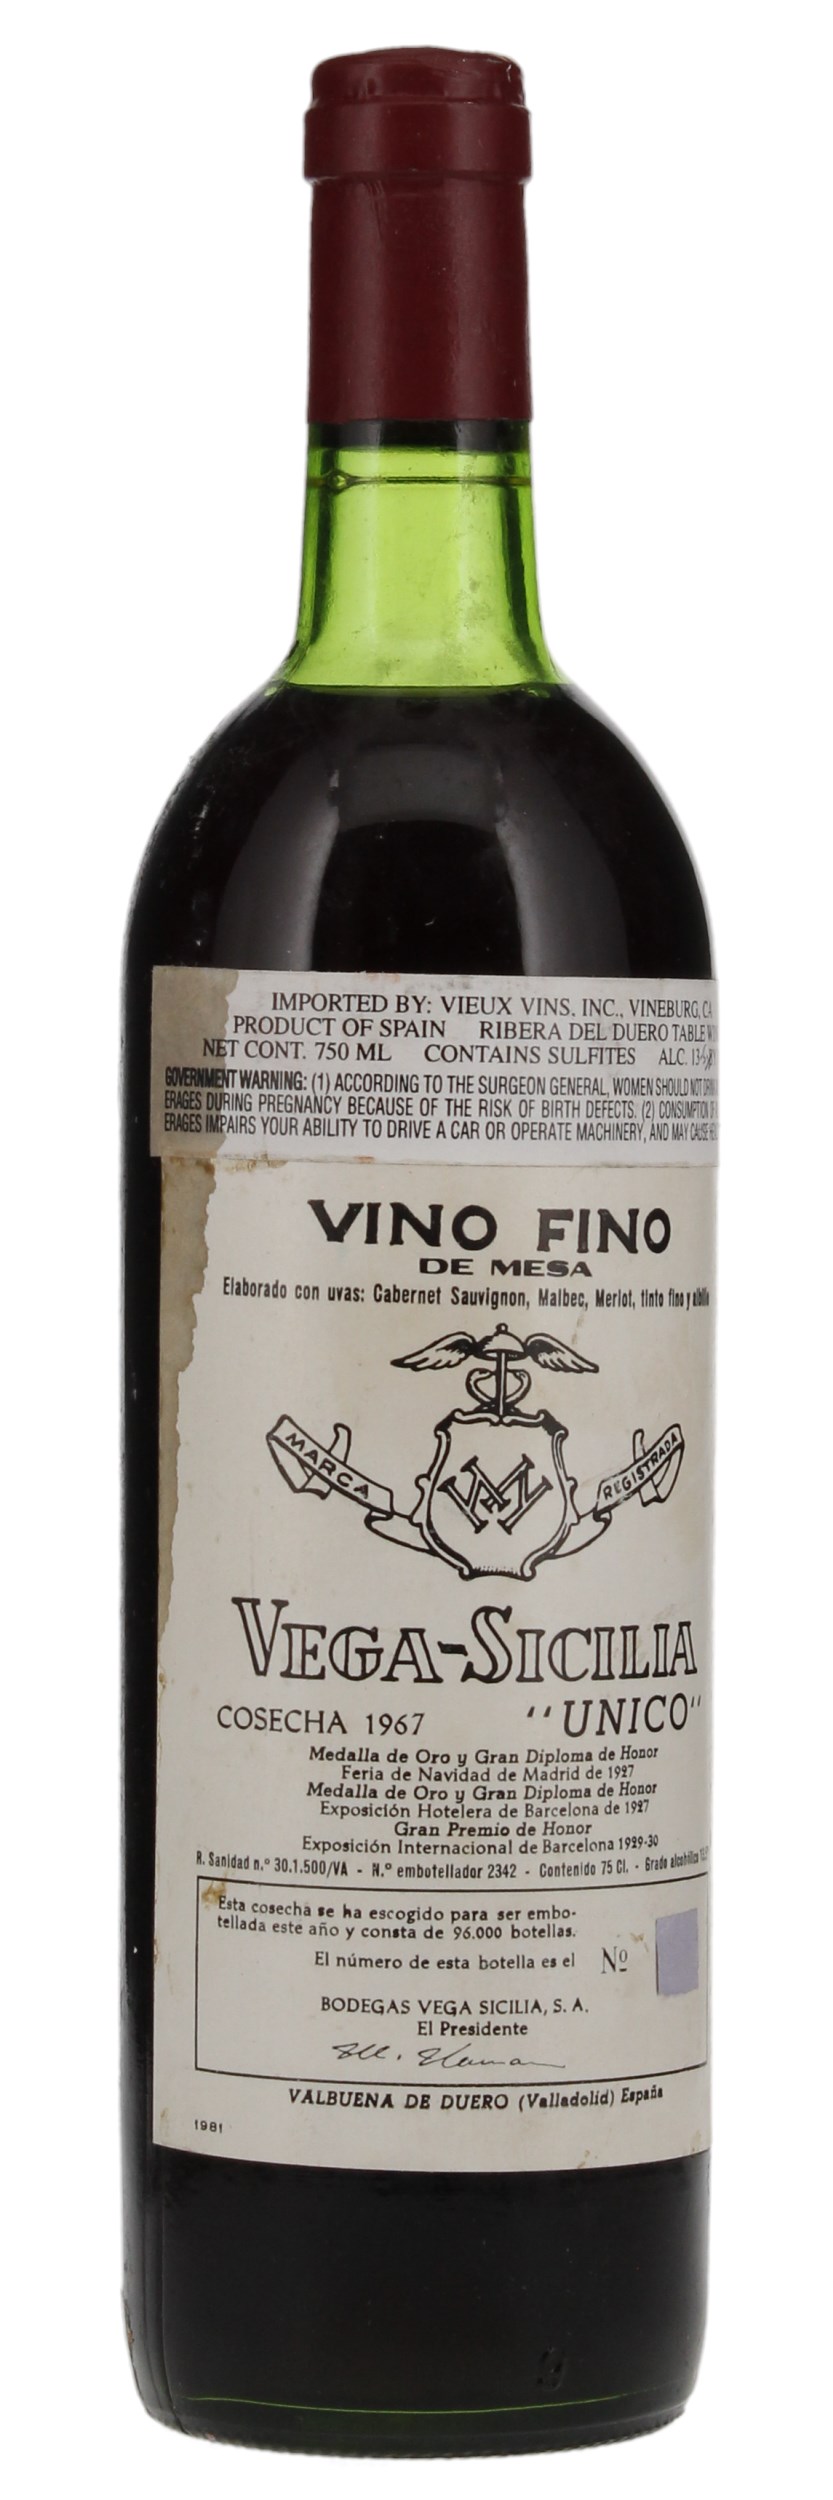 1967 Vega Sicilia Unico, 750ml